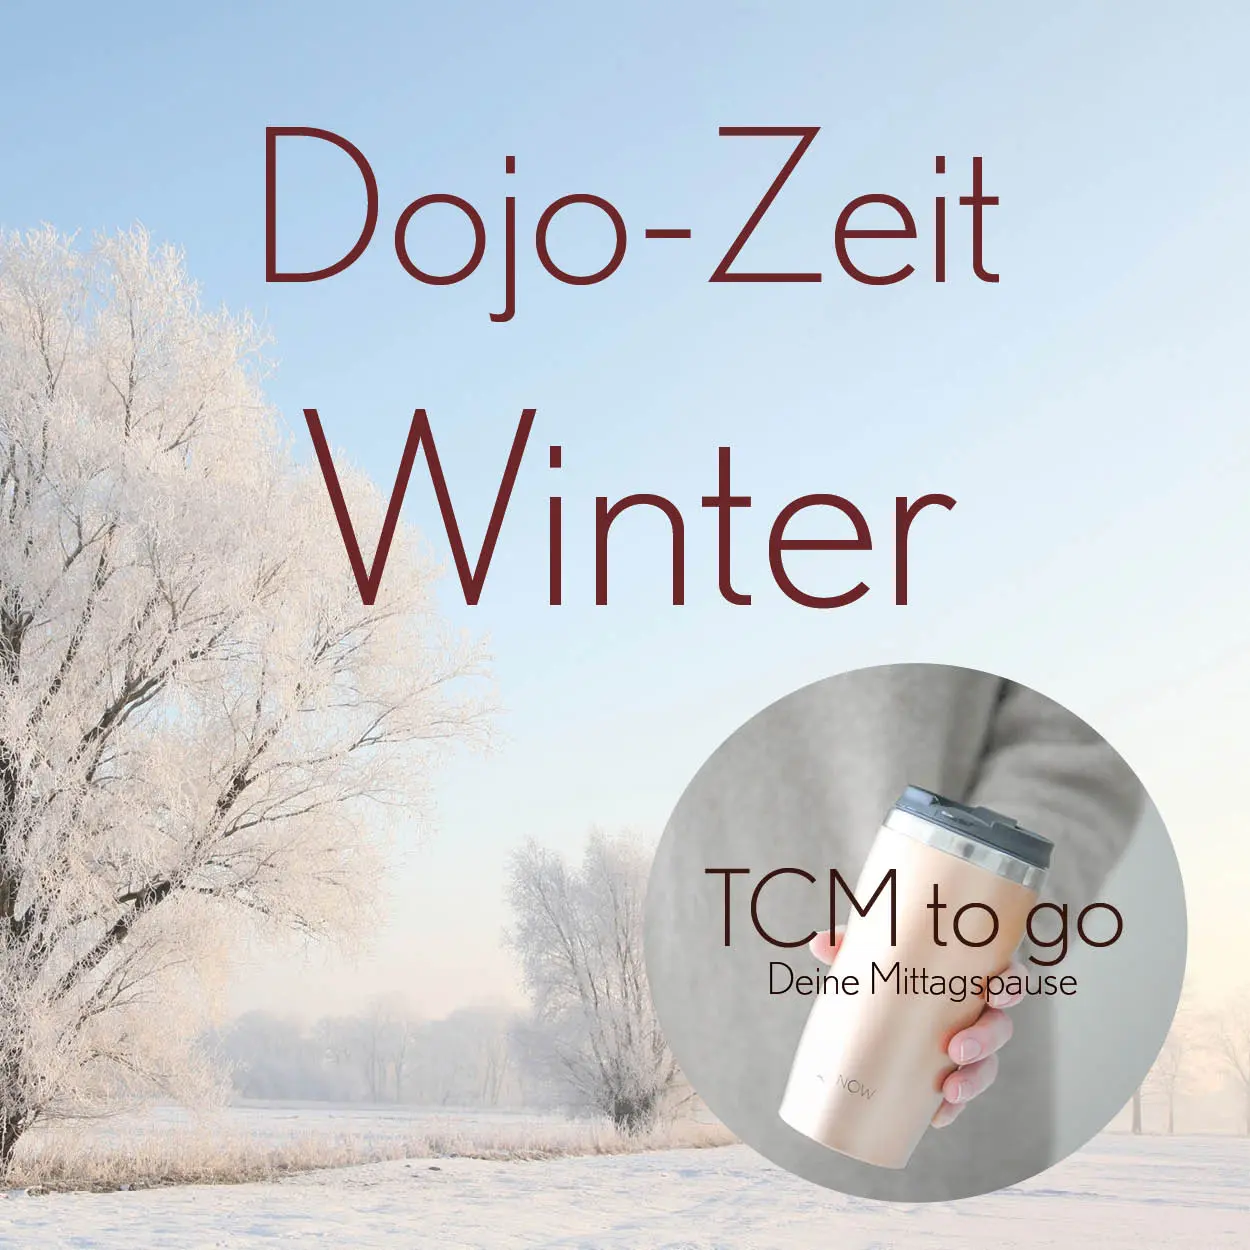 TCM to go Dojo Zeit Winter 600x600px 119